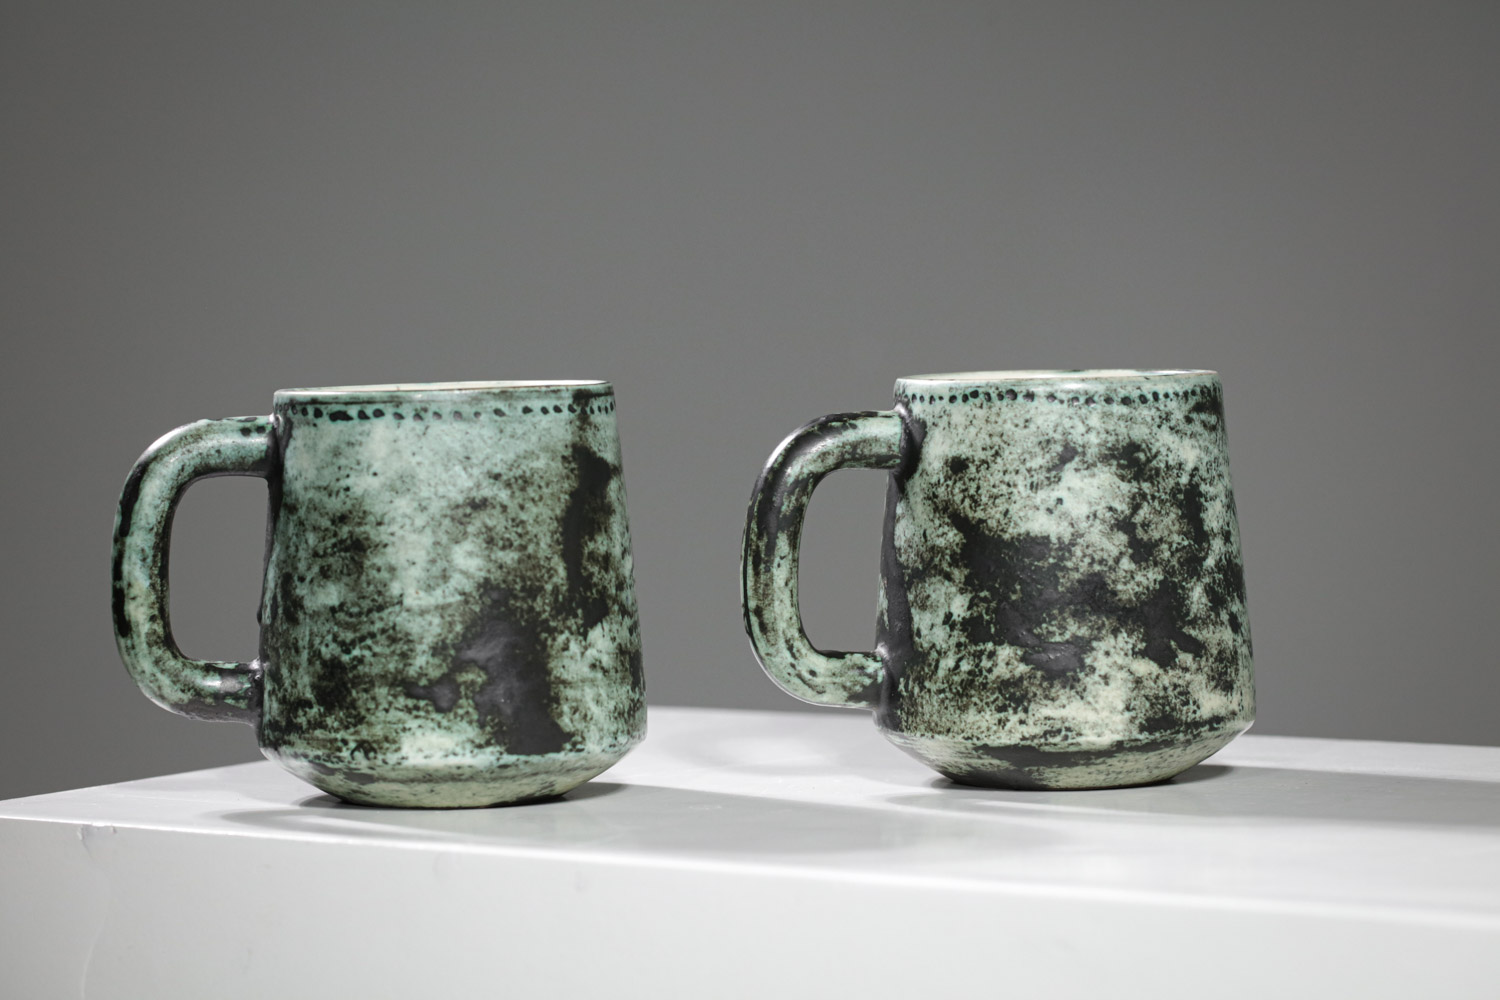 Mugs céramique Jacques blin vert années 50:60 - G484